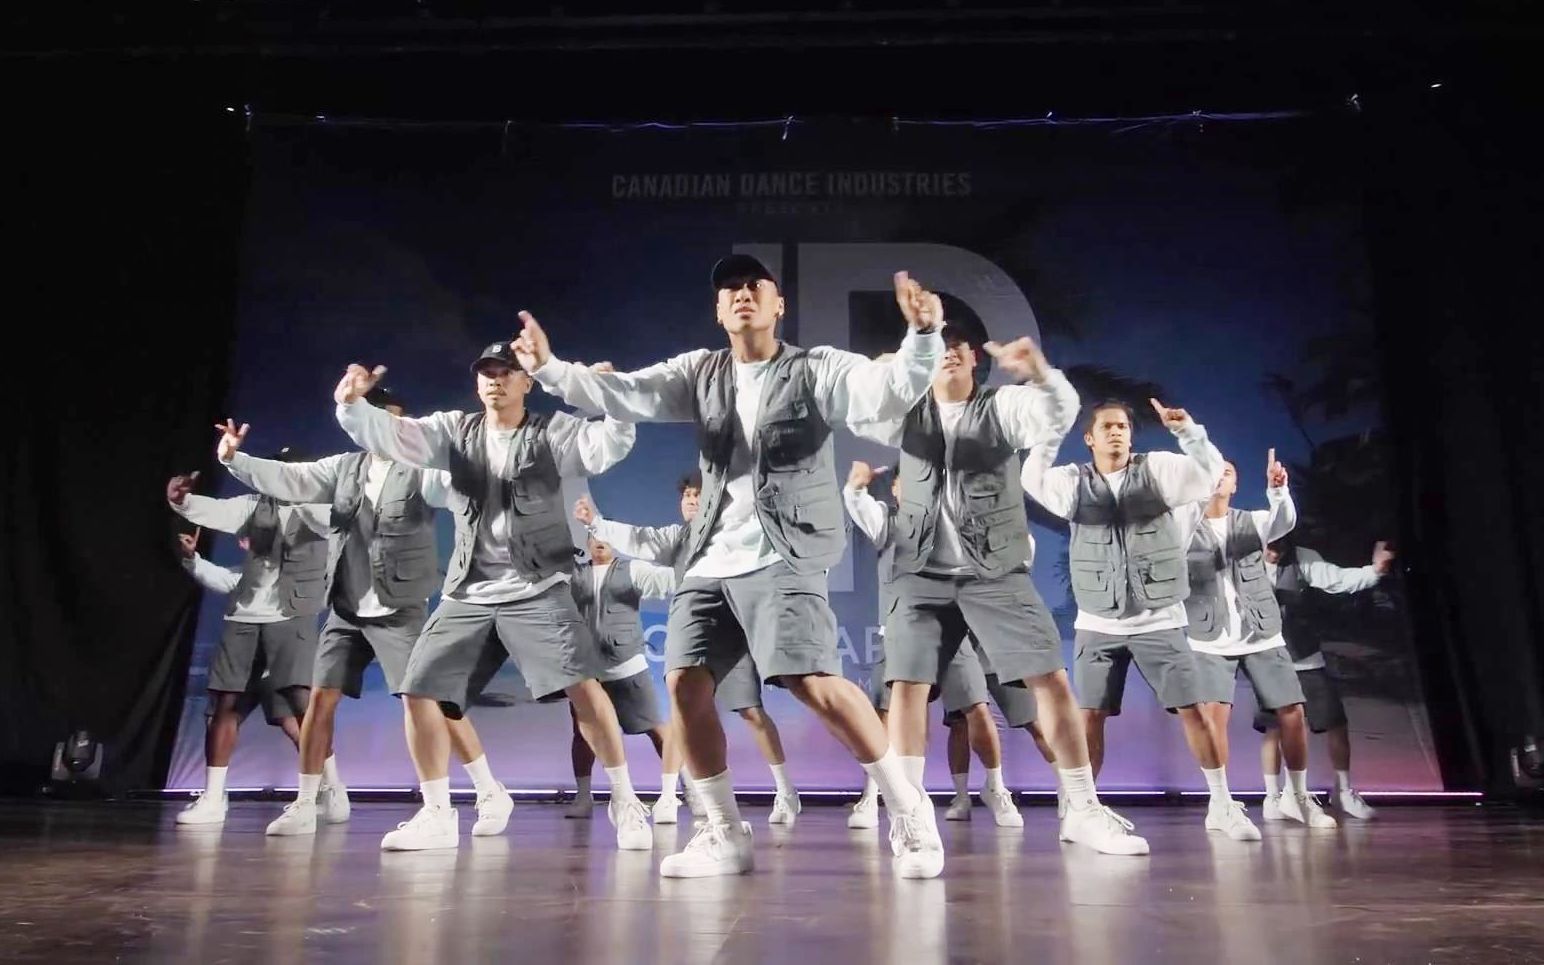 加拿大舞团brotherhood现场齐舞表演!dancers paradise街舞比赛 2019